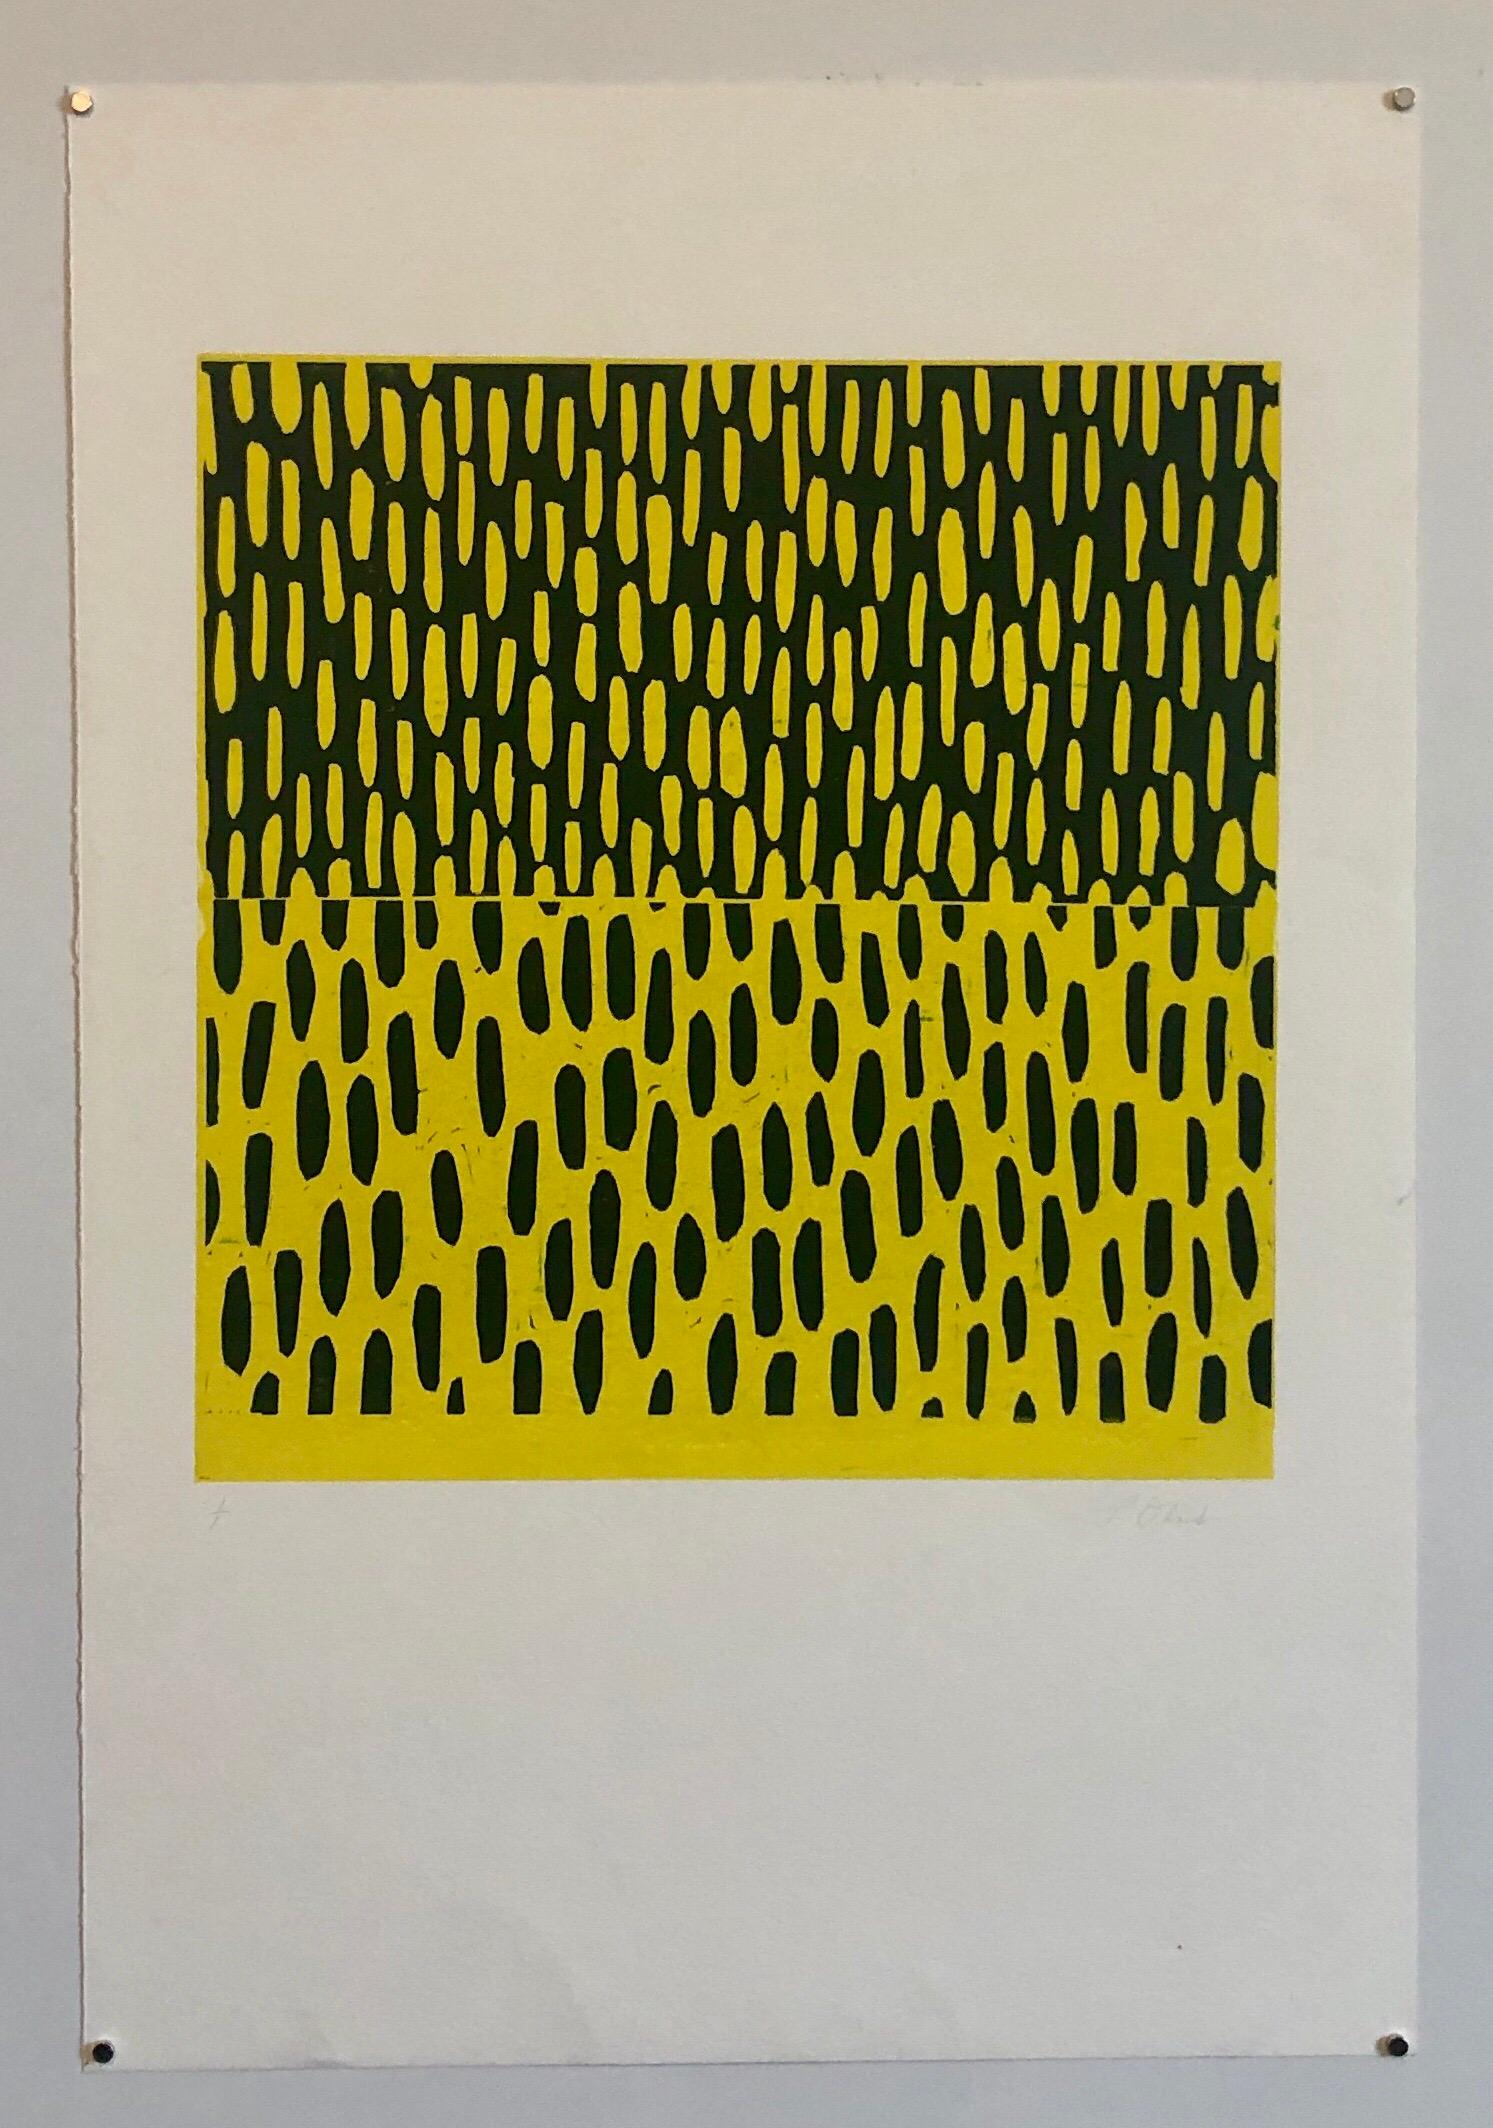 Gelb-blauer Monodruck Monotypie-Gemäldedruck im abstrakten Expressionismus-Stil 1